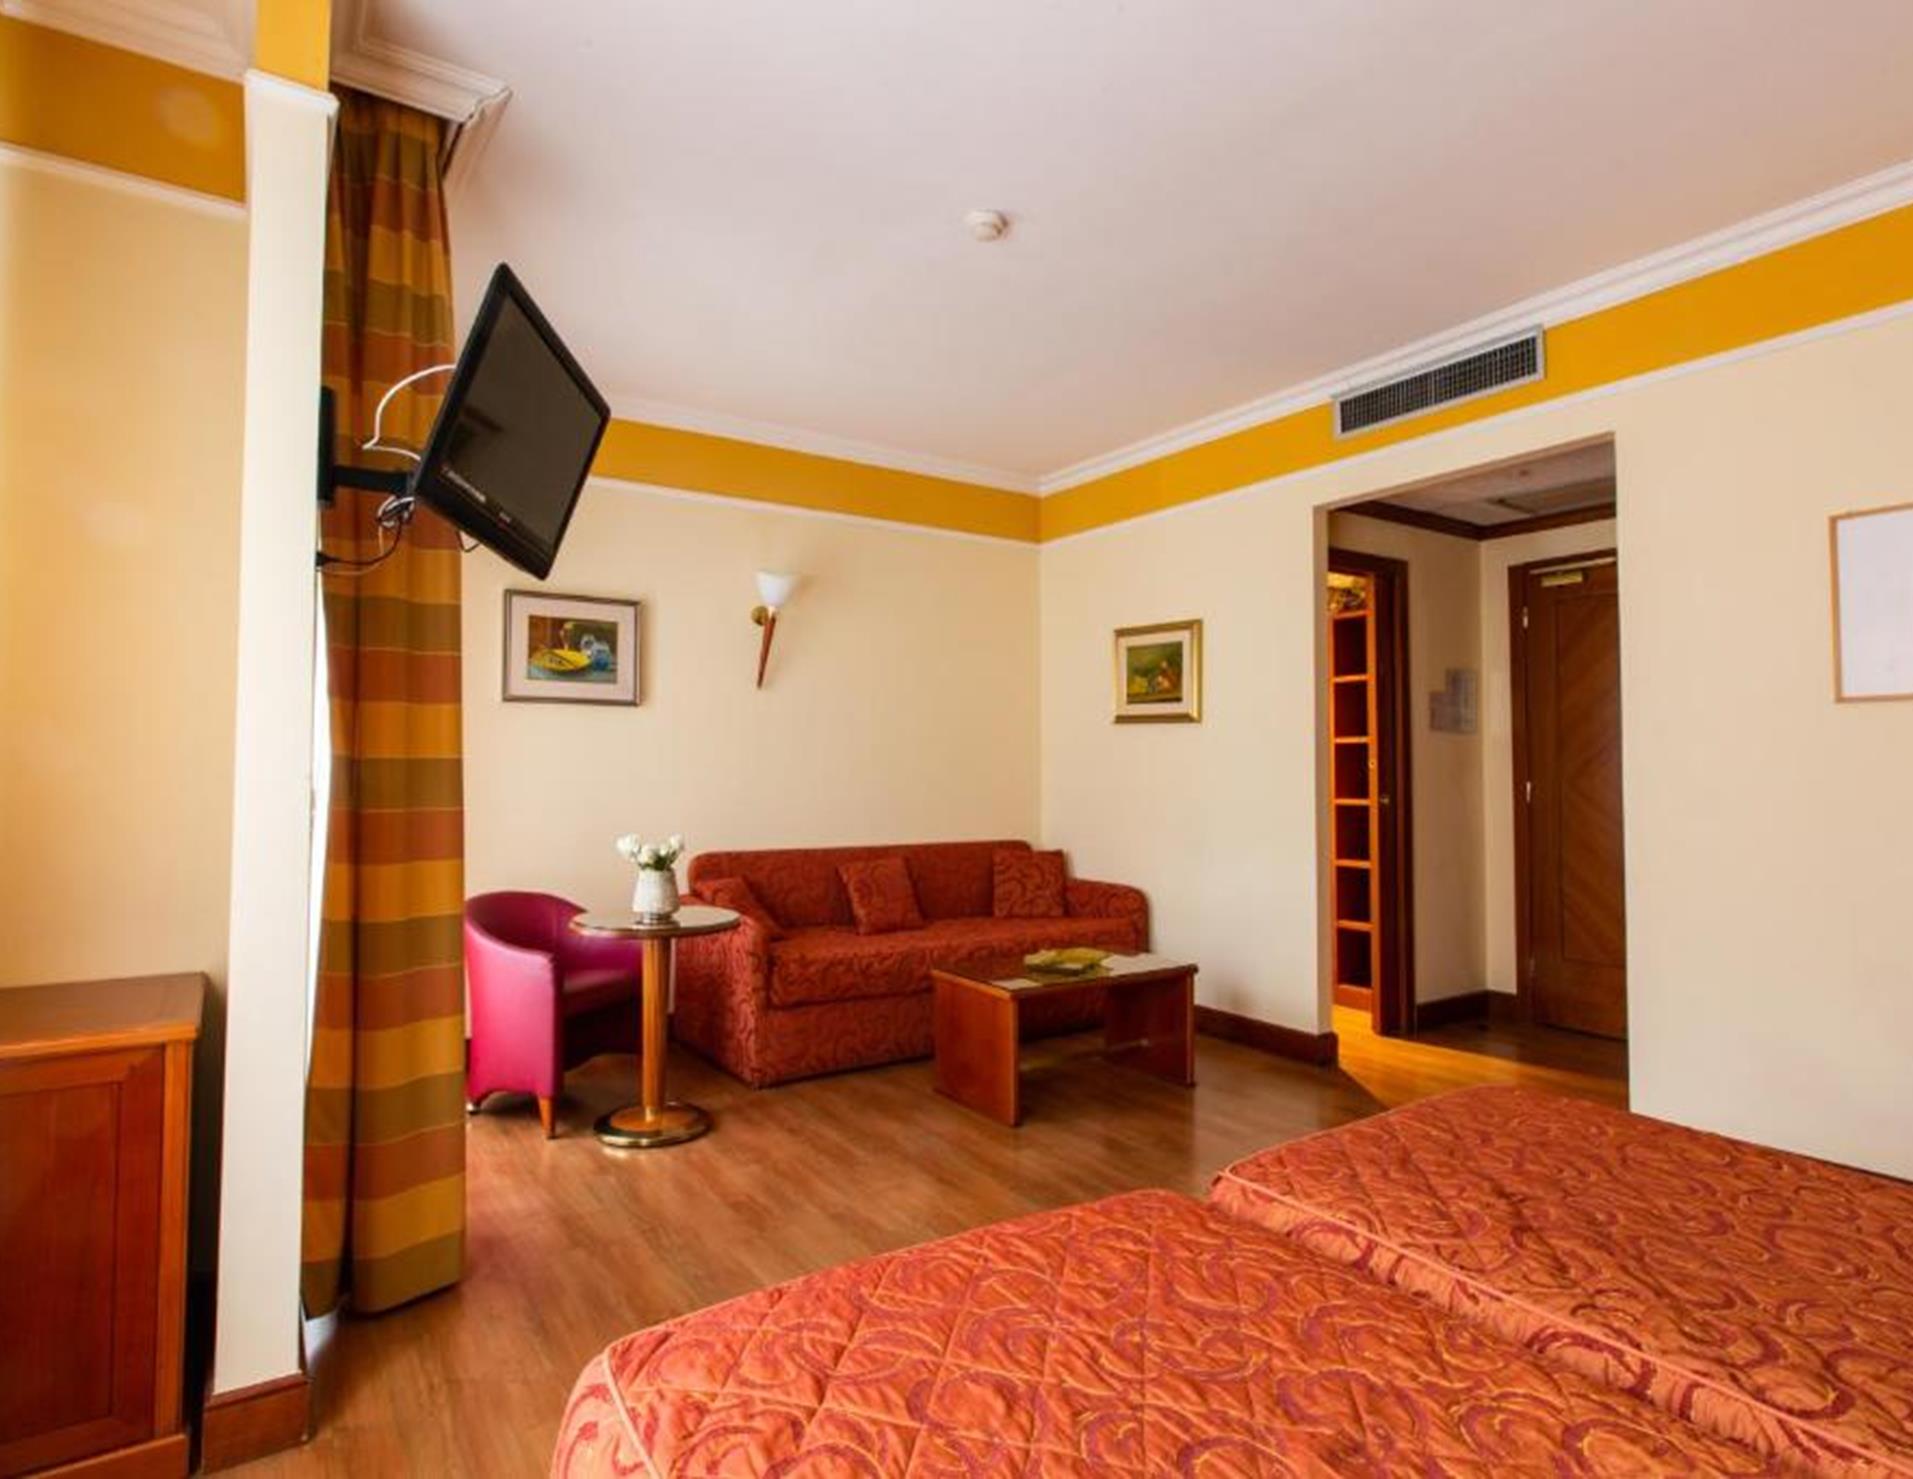 Hotel Il Chiostro - Room 5